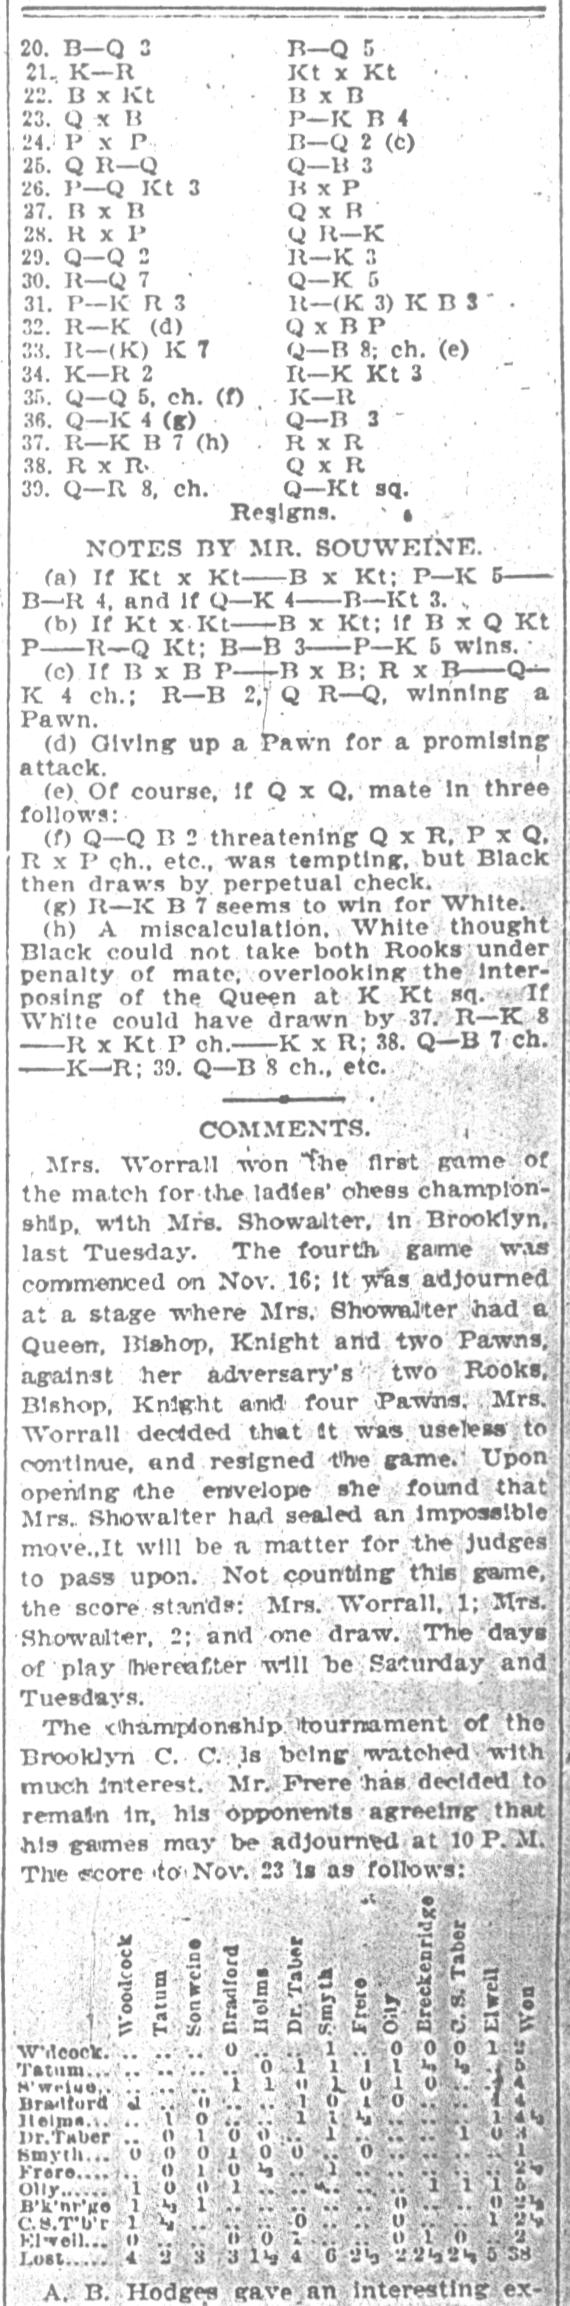 1894.11.24-03 Brooklyn Daily Standard-Union.jpg